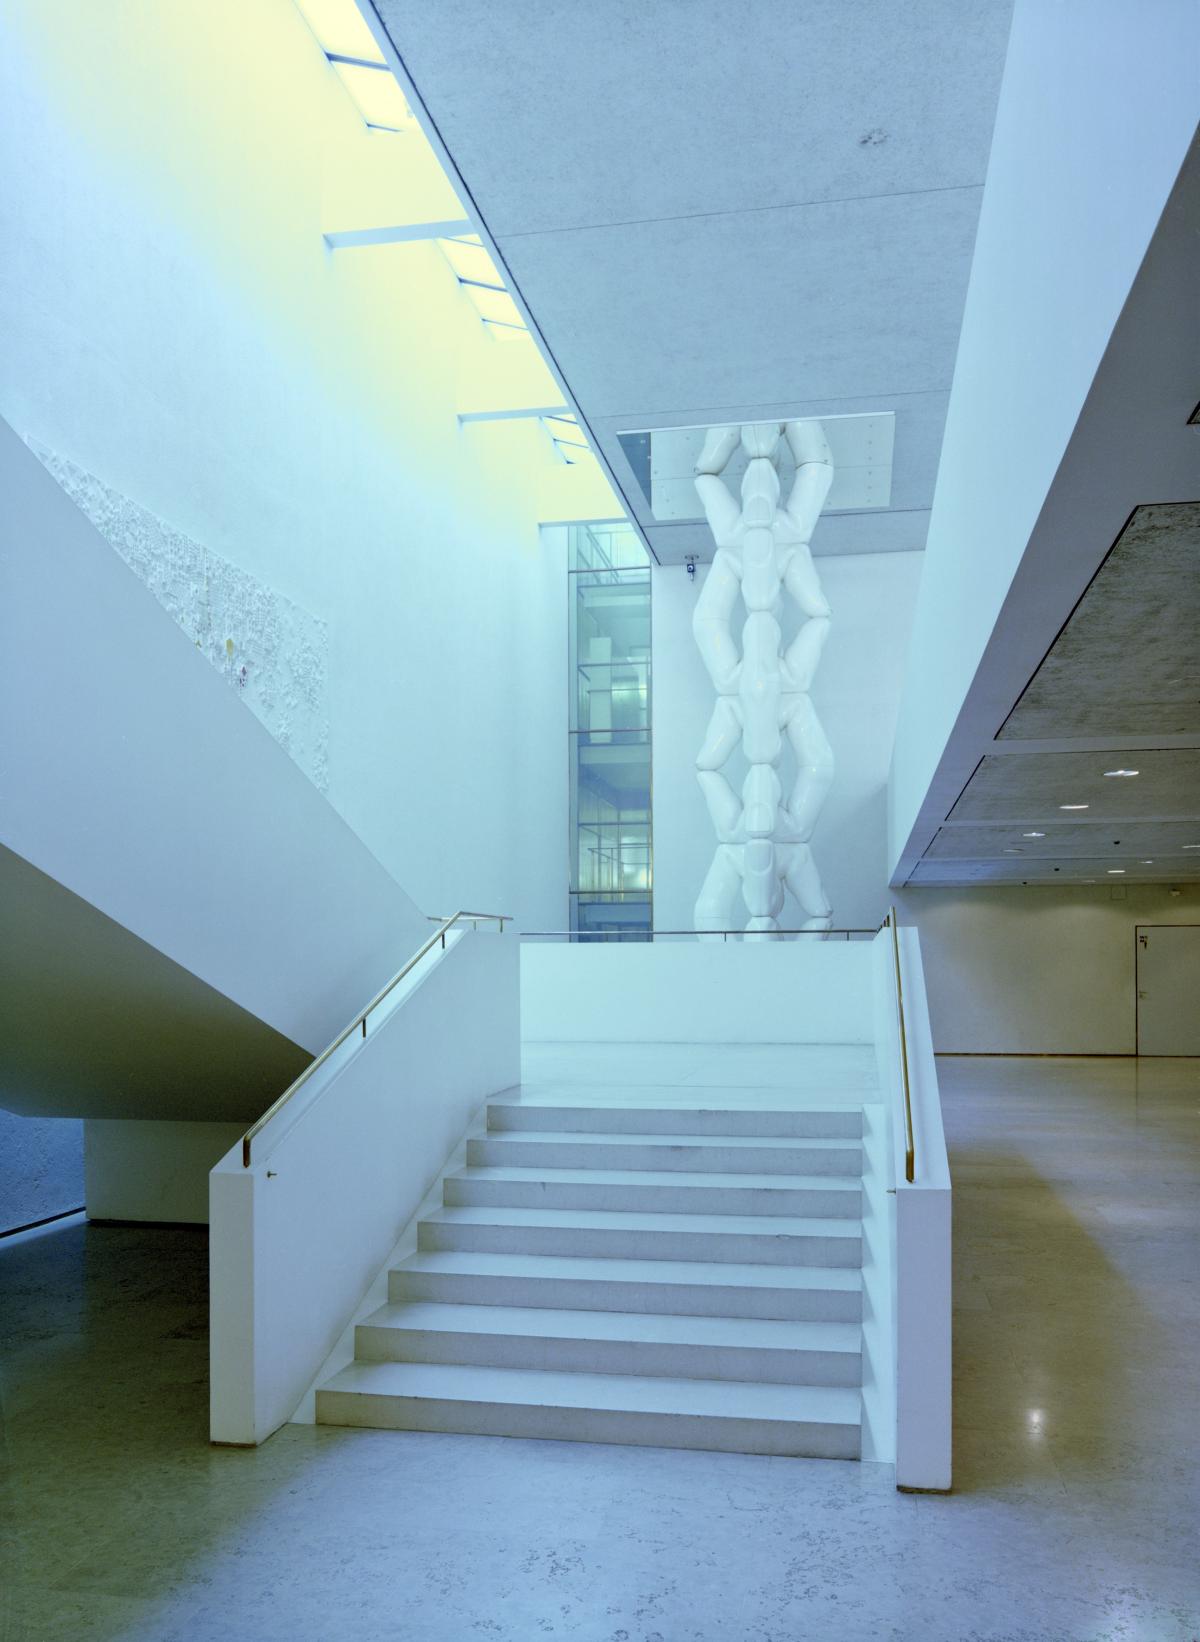 Vaalea portaikko Helsingin kaupungintalon aulassa. Luonnonvaloa laskeutuu portaisiin välikaton ja seinän raosta. Portaiden takana on vaalea veistostaideteos.